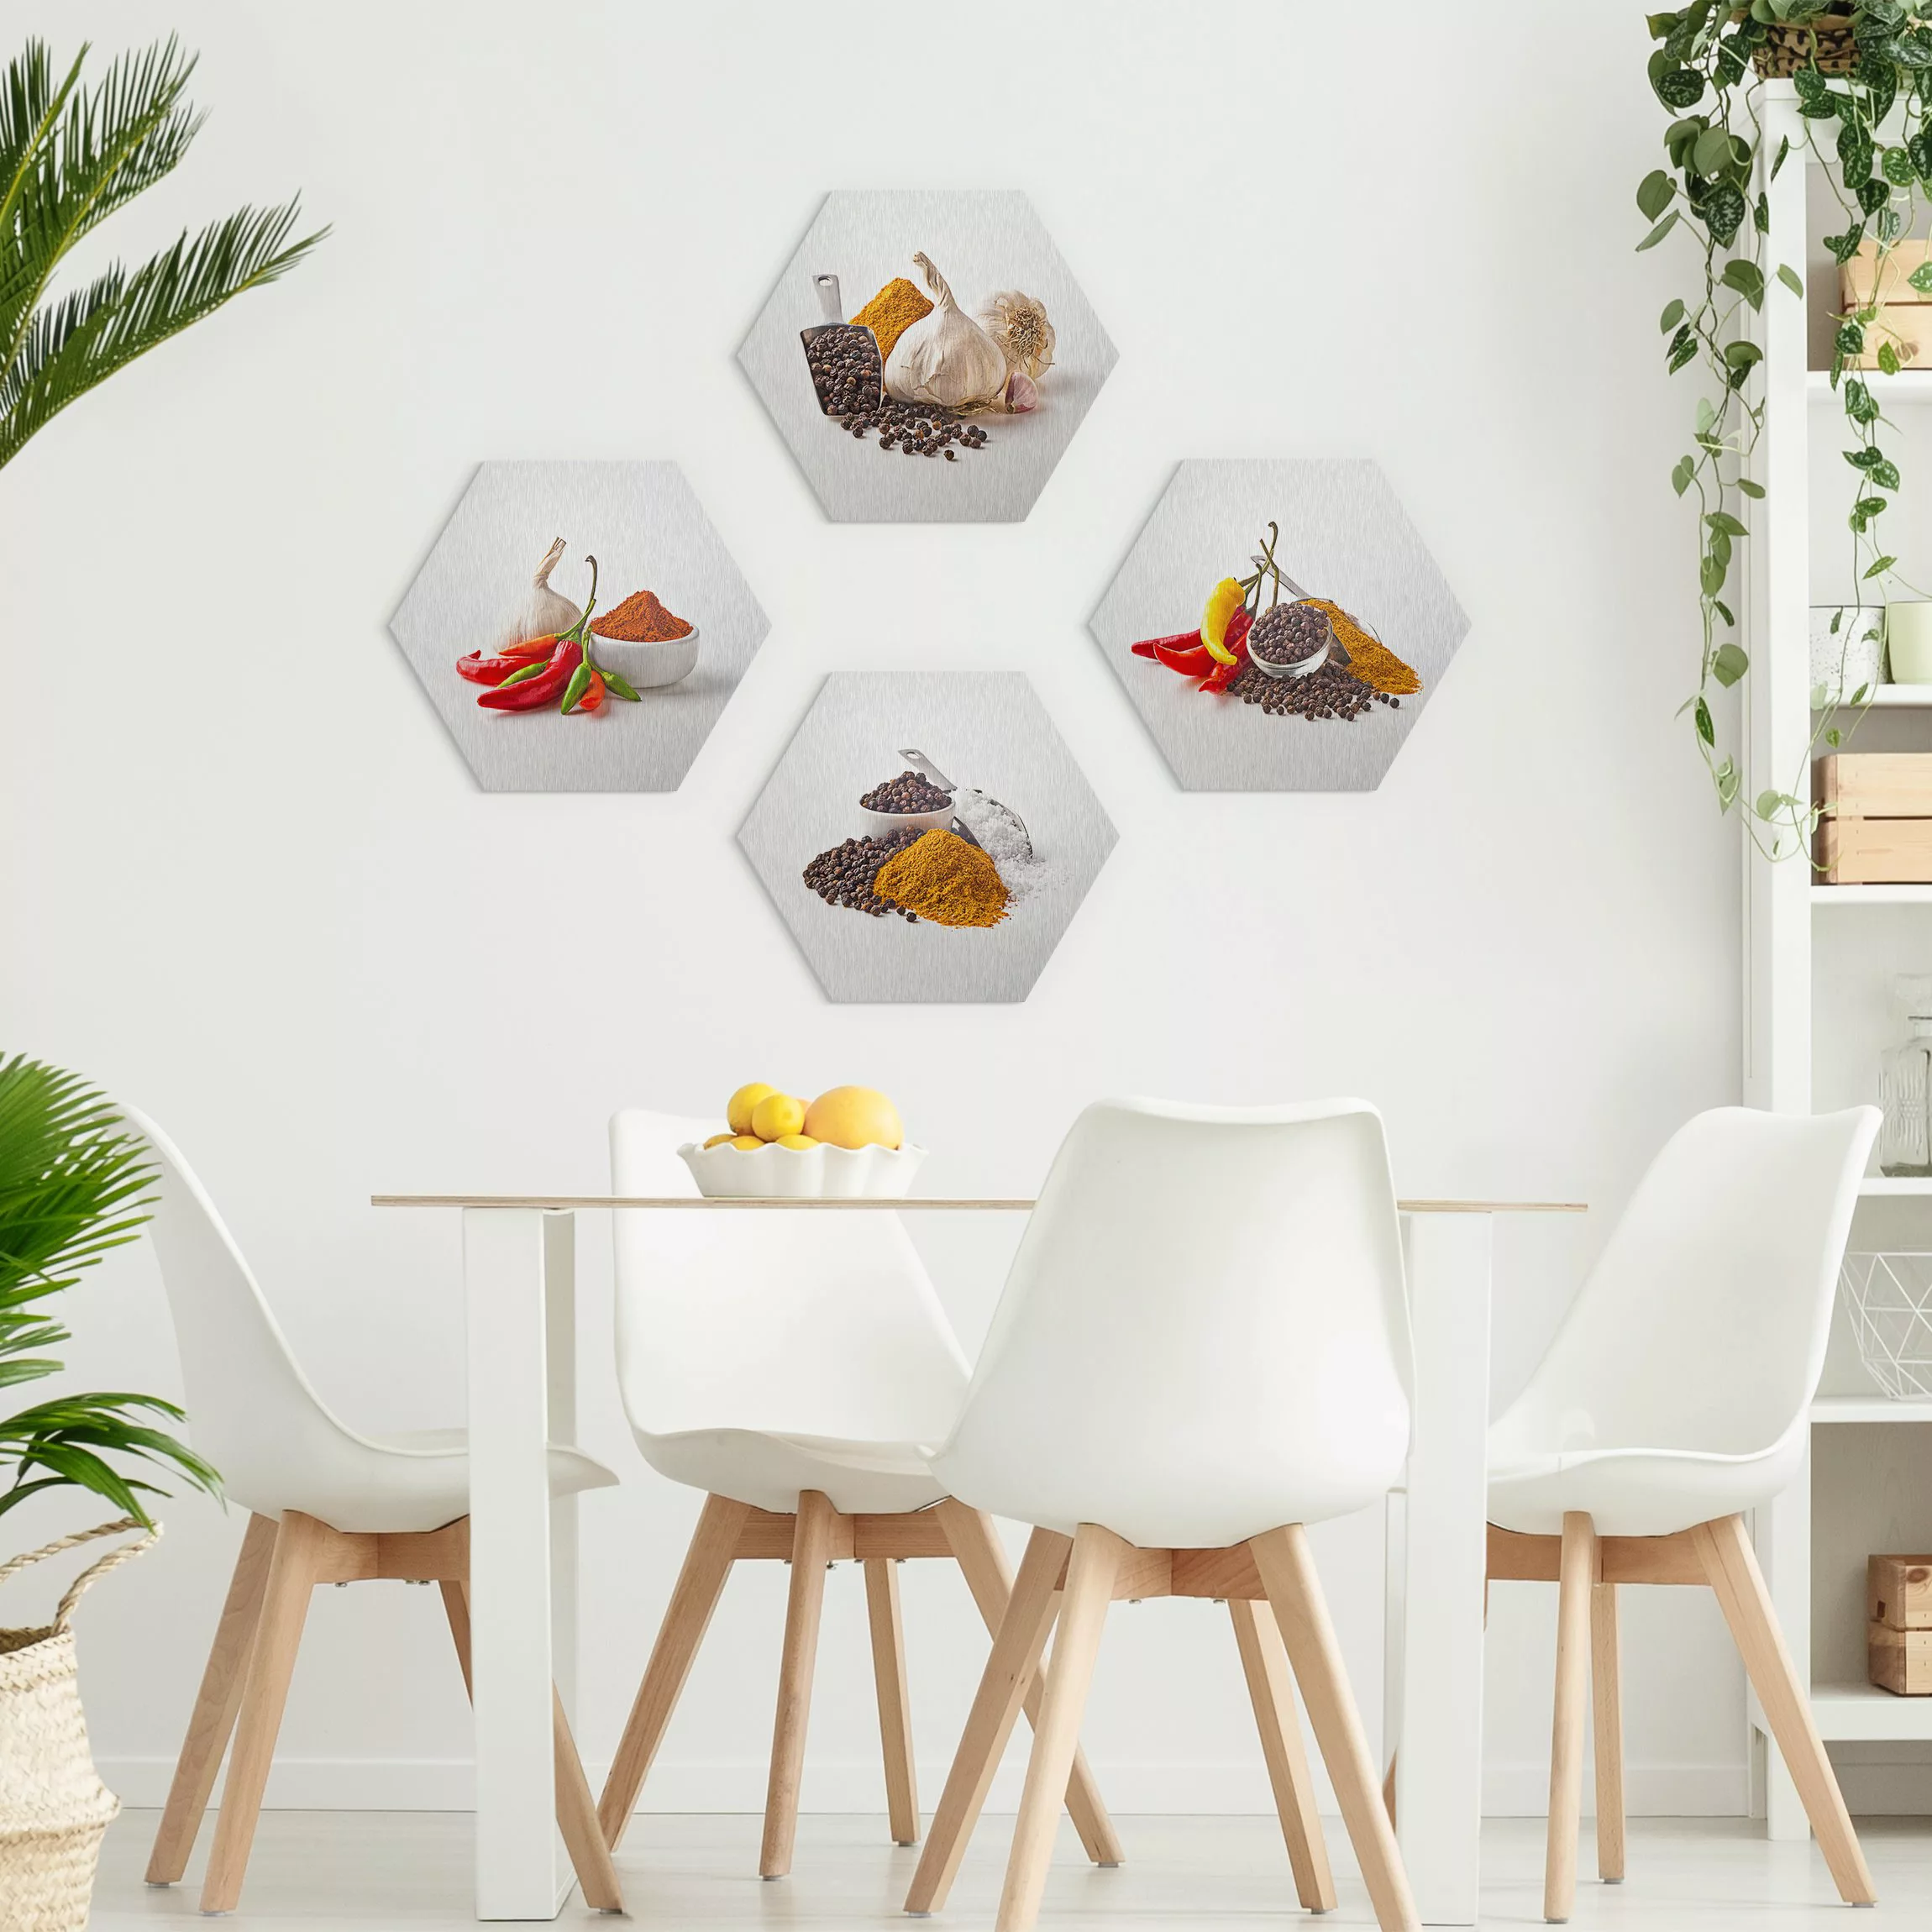 4-teiliges Hexagon-Alu-Dibond Bild Chili Knoblauch und Gewürz - Sets günstig online kaufen